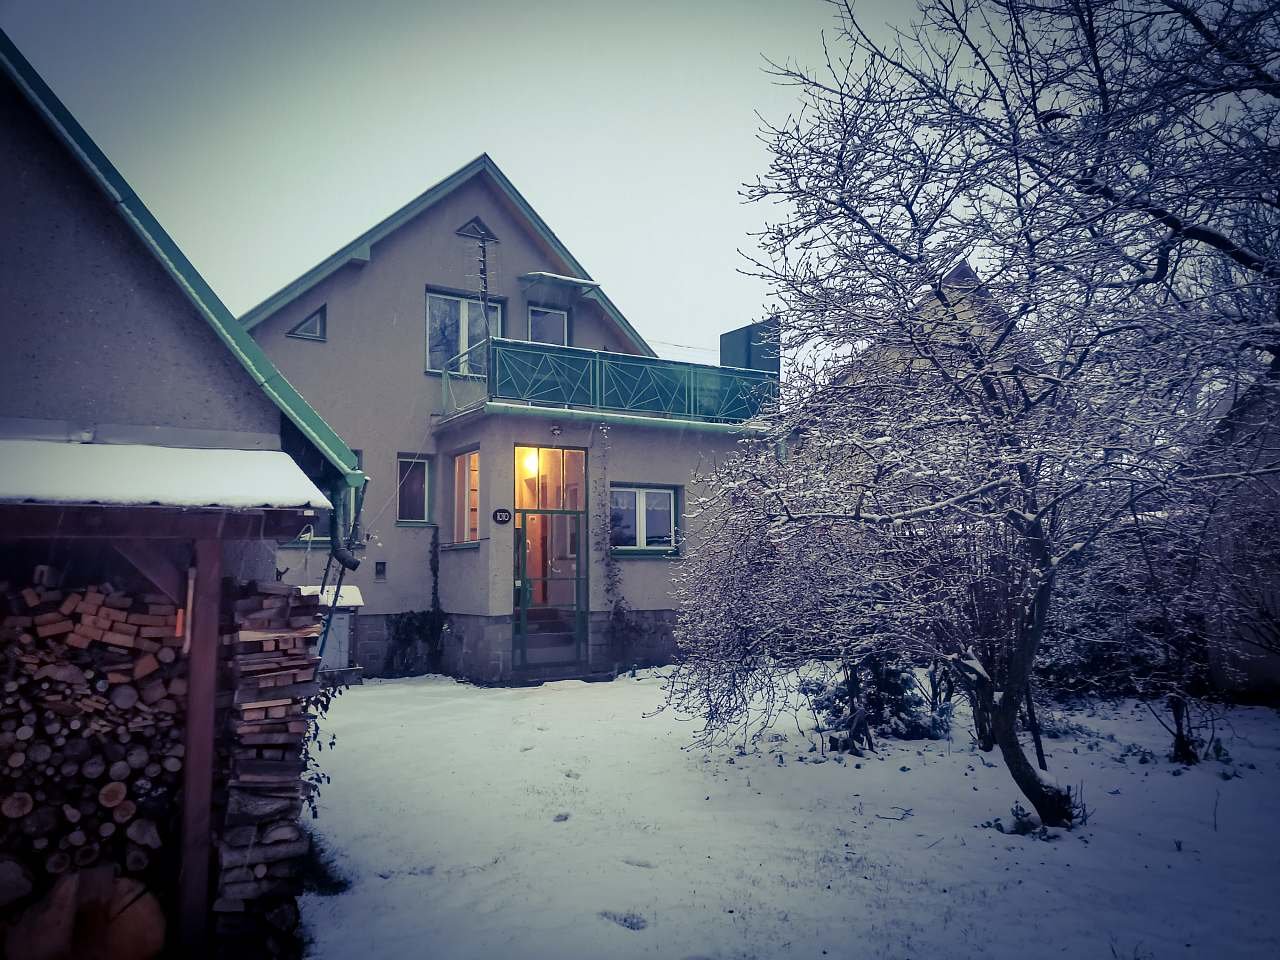 Winteraufenthalt im Ferienhaus U Marušky in den Beskiden